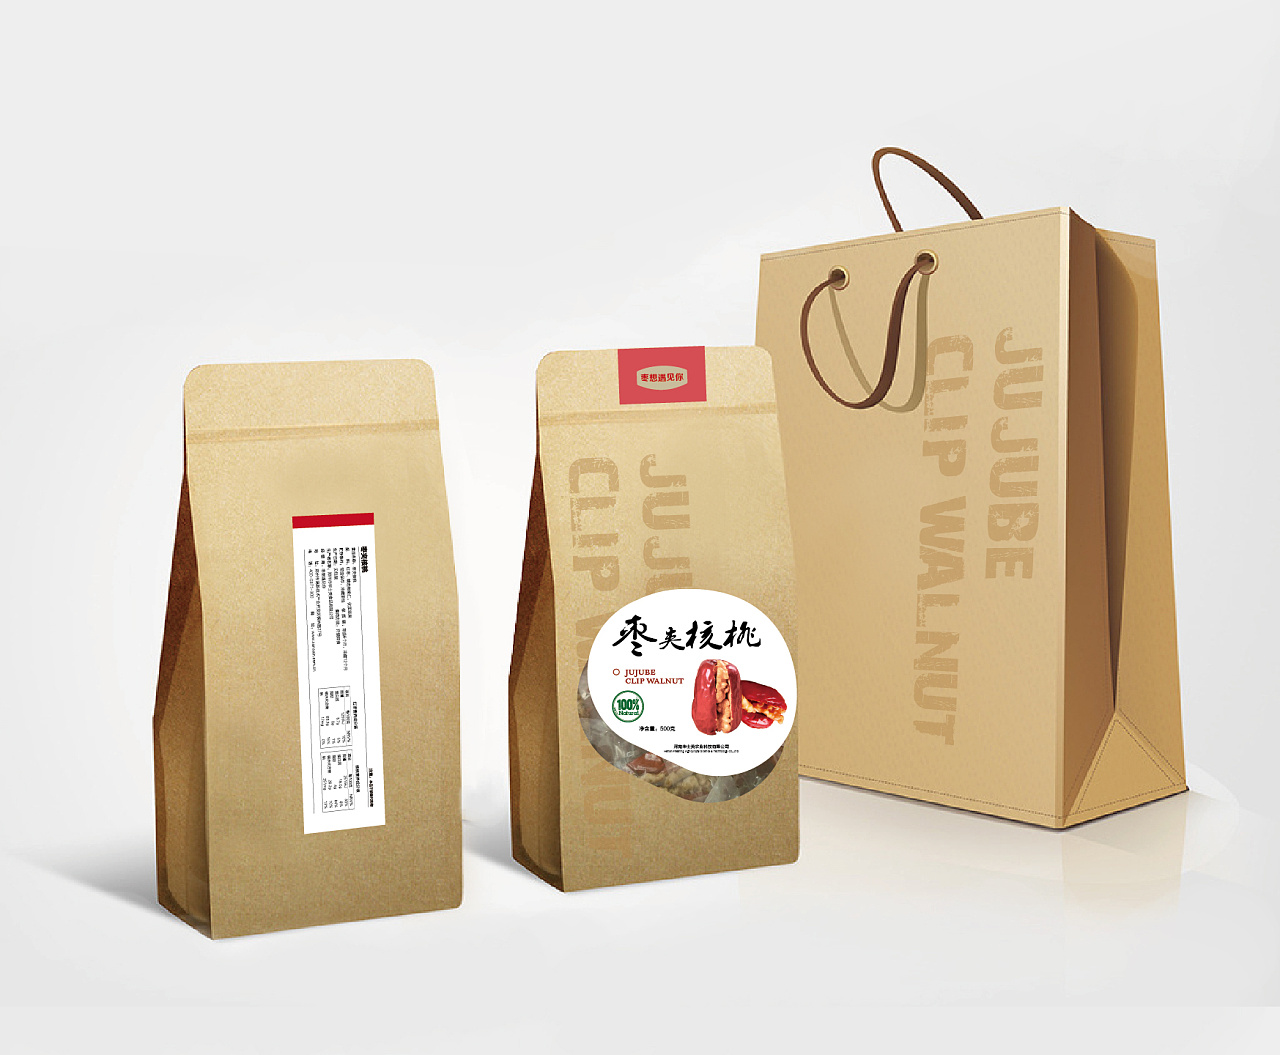 独特的鸡蛋包装设计符合当代农产品包装设计创新思路-北京西林包装设计